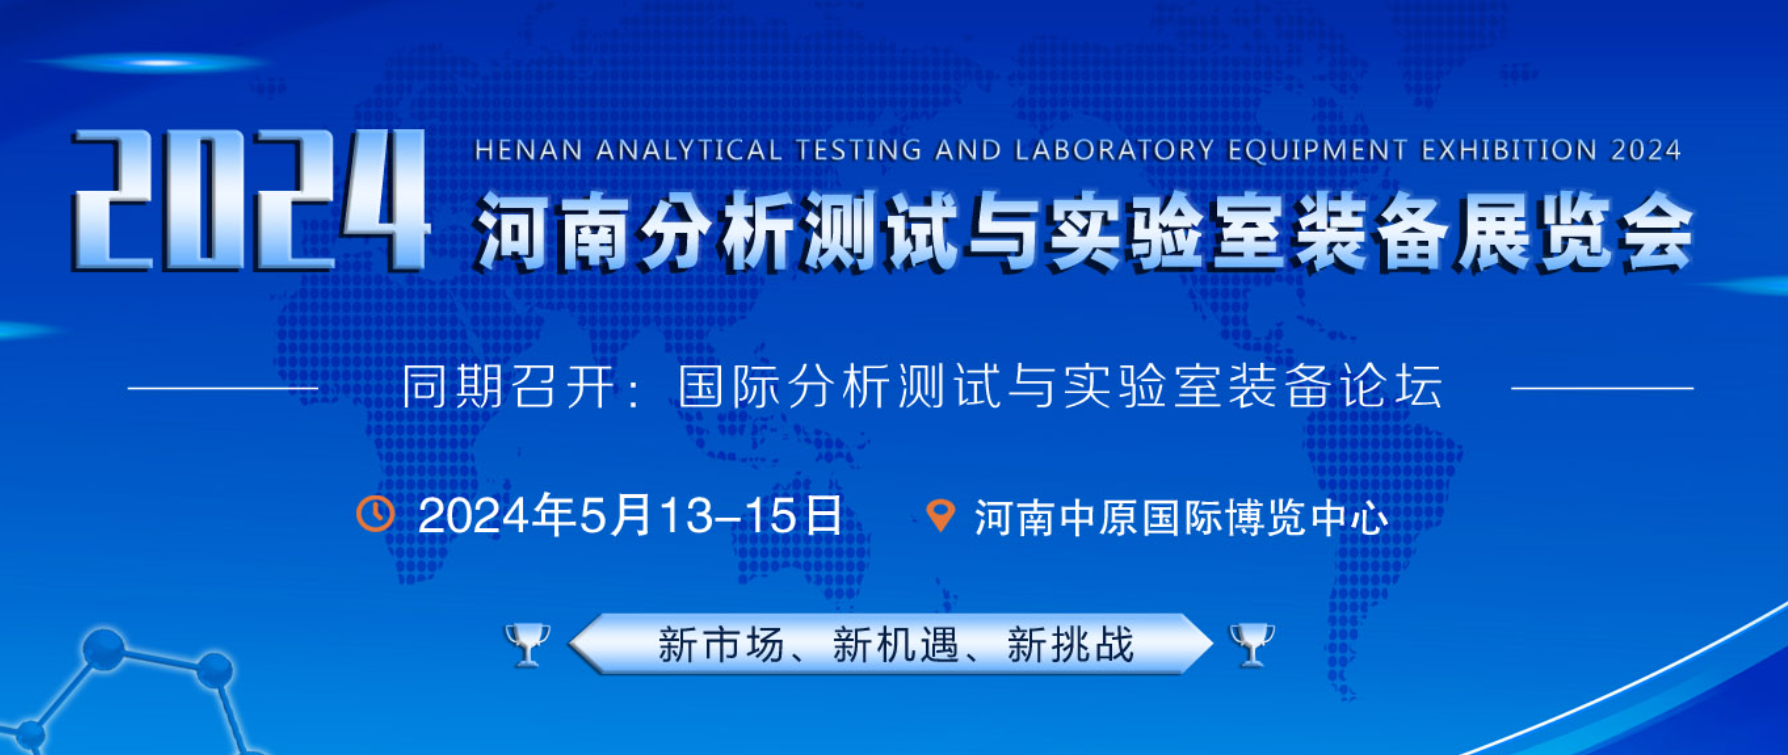 湘立仪器闪耀2024河南分析测试与实验室装备展